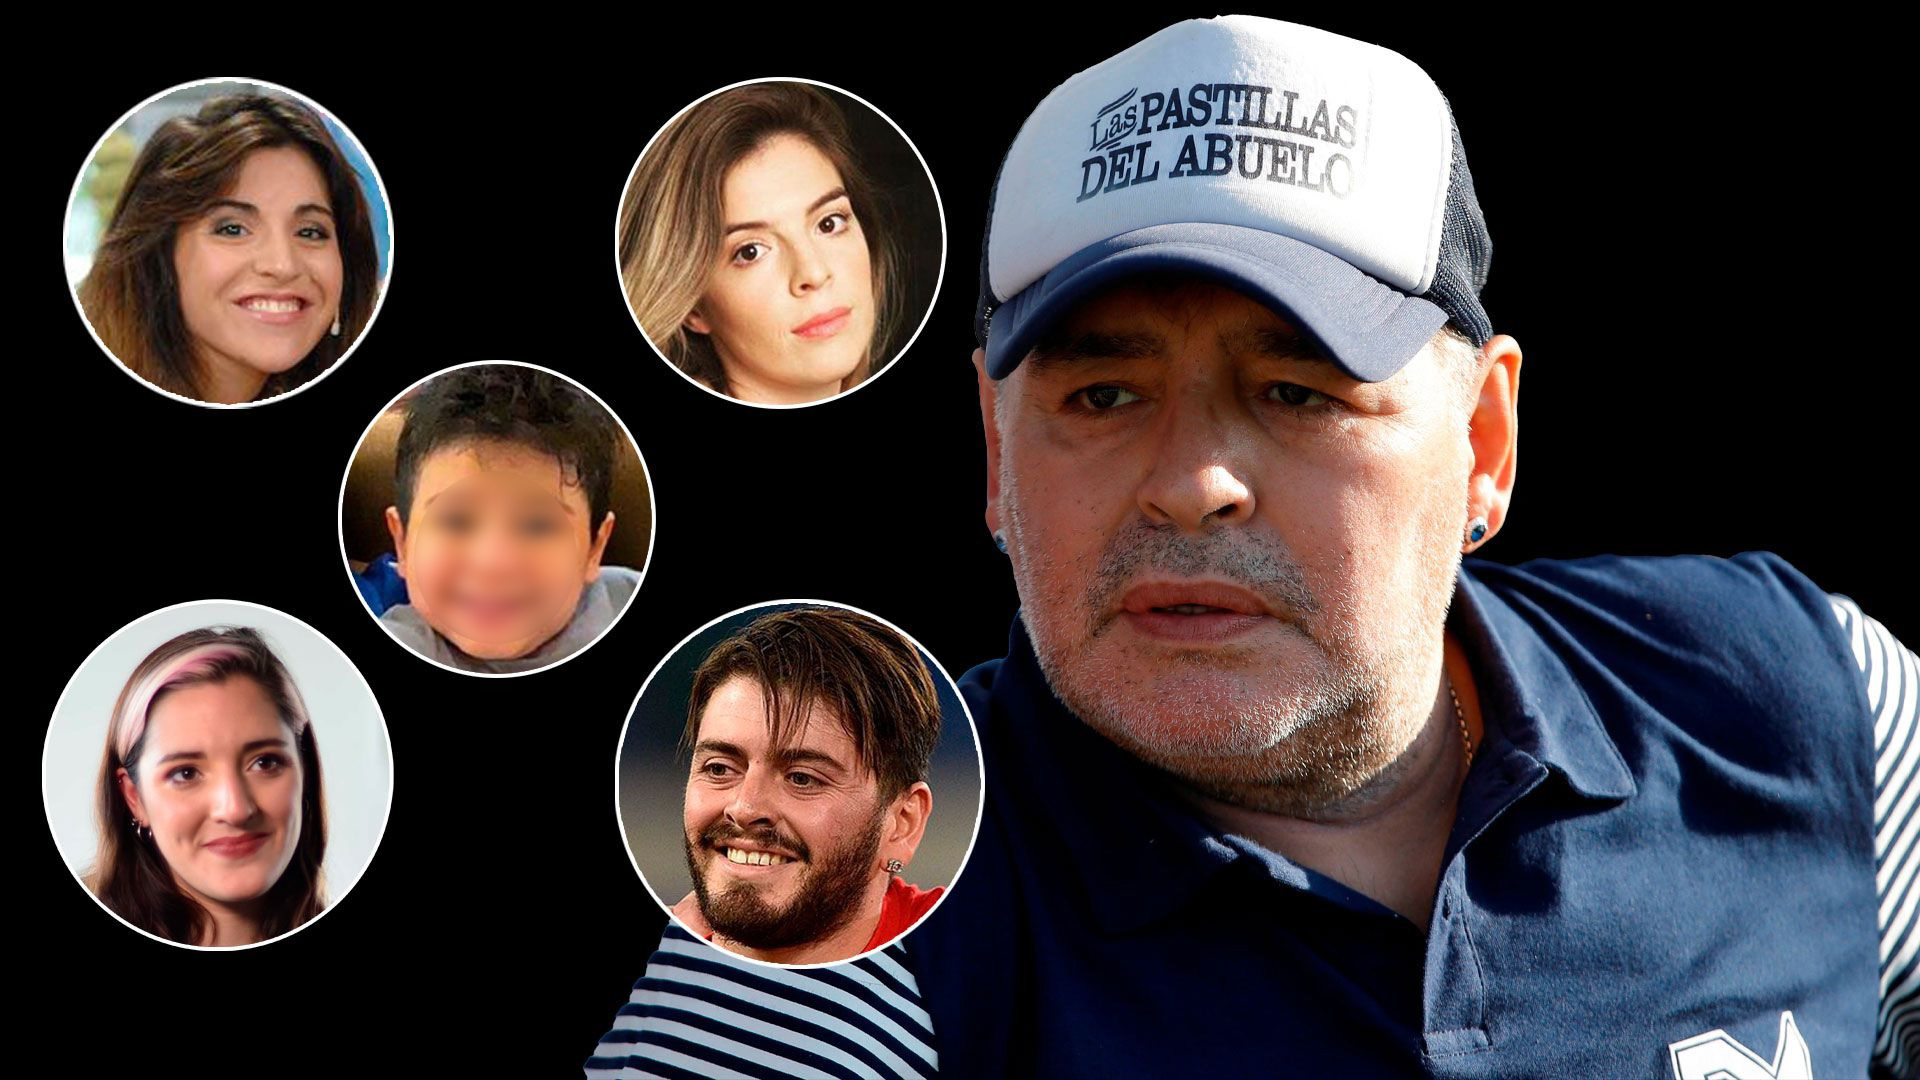 Legalmente, y hasta el momento, Diego Maradona tiene cinco herederos: Diego Junior, Dalma, Gianinna, Jana y Dieguito Fernando